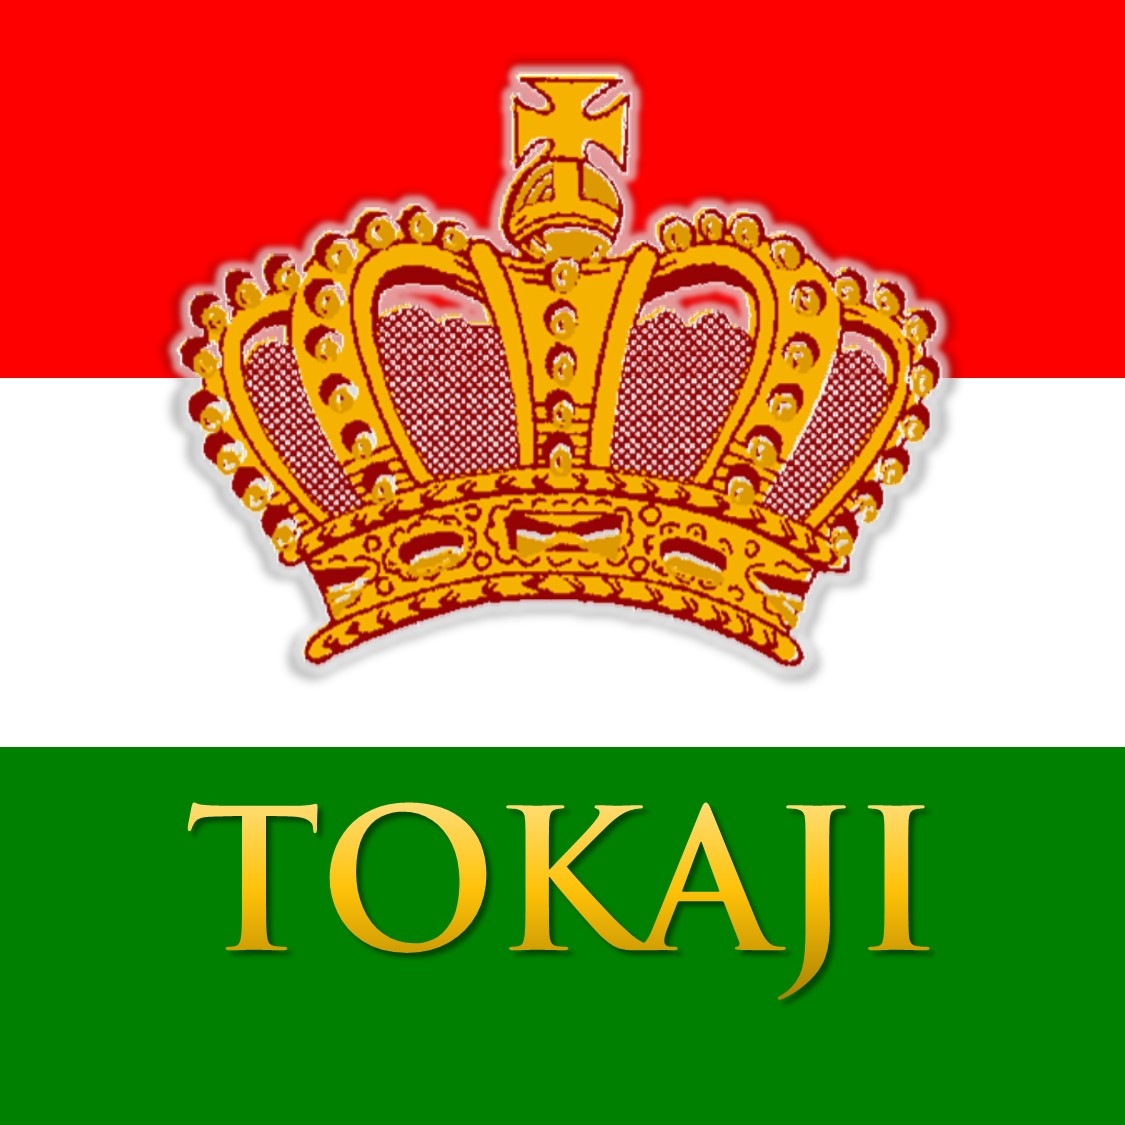 匈牙利托卡伊（Tokaji）葡萄园分级及酒庄排名 - 知乎